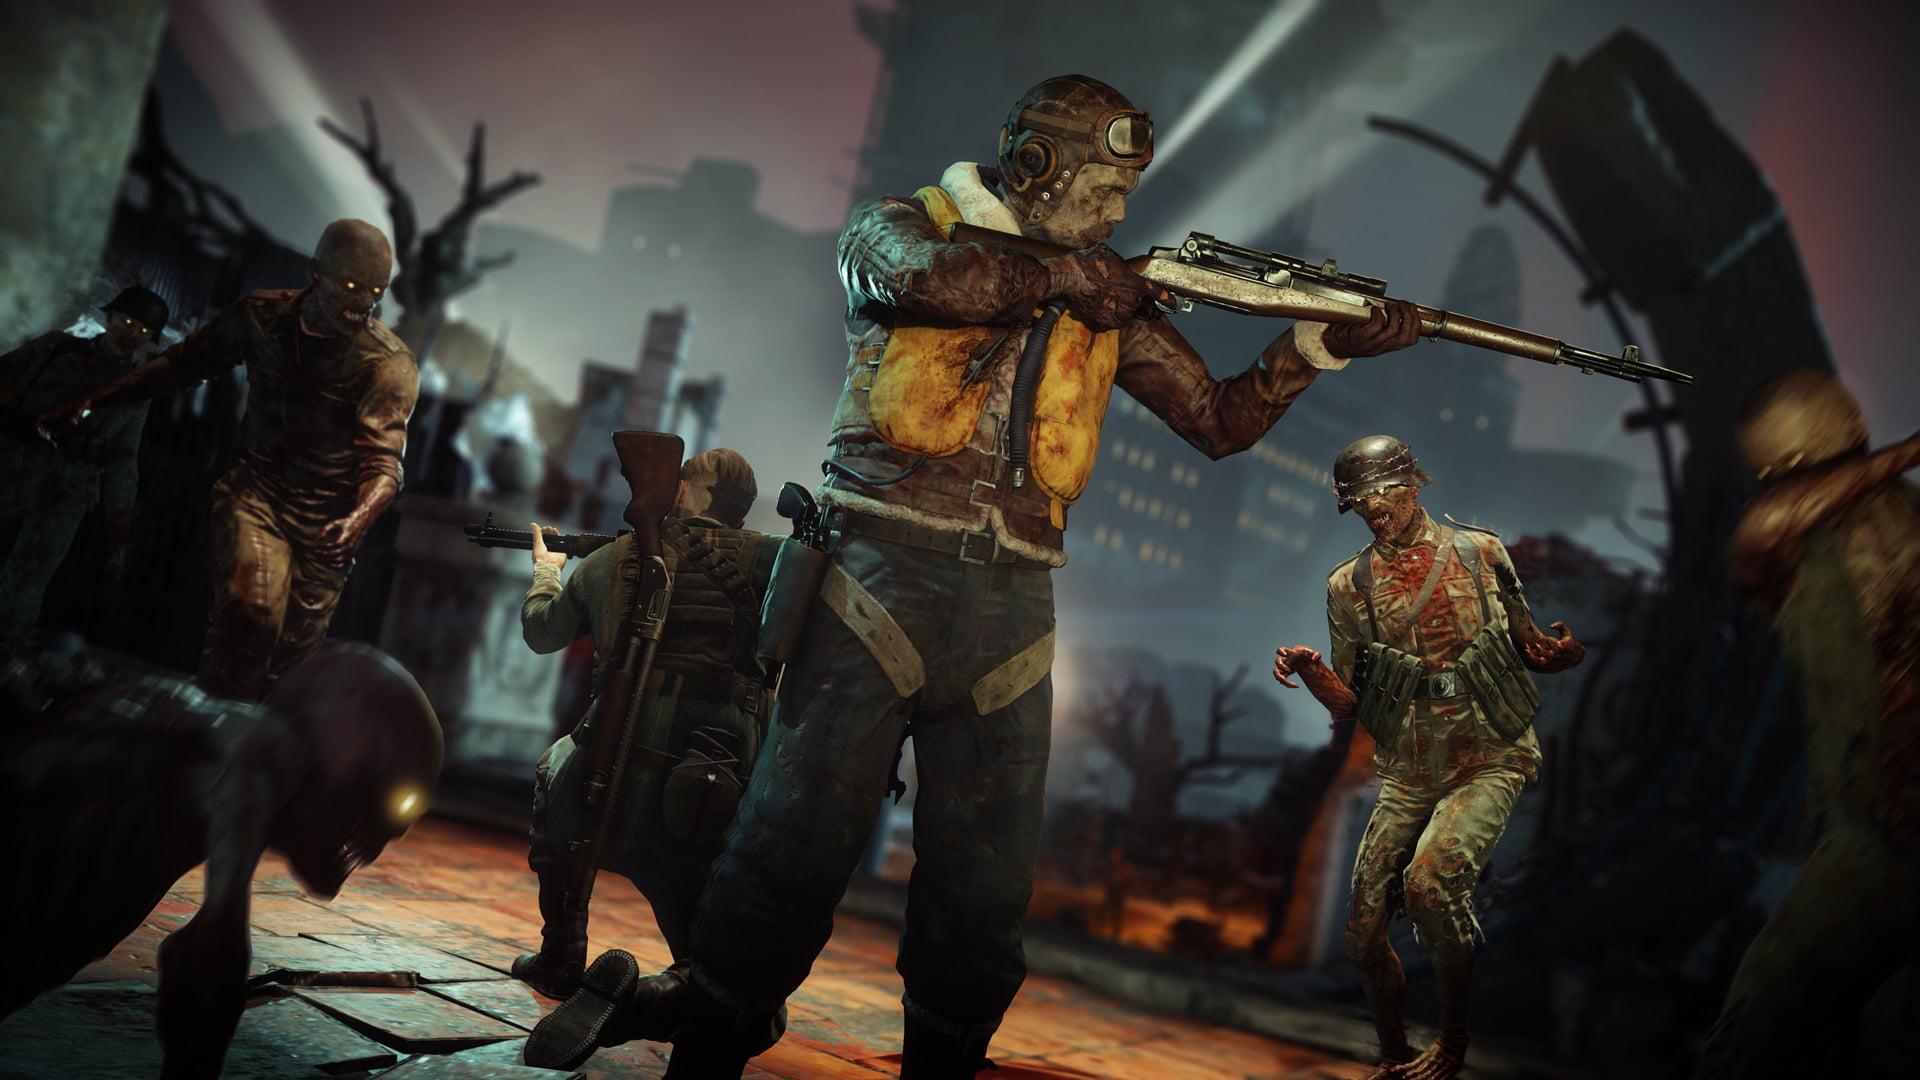 Compre agora o jogo Zombie Army 4: Dead War para Xbox One - Mídia Física,  lacrado, original